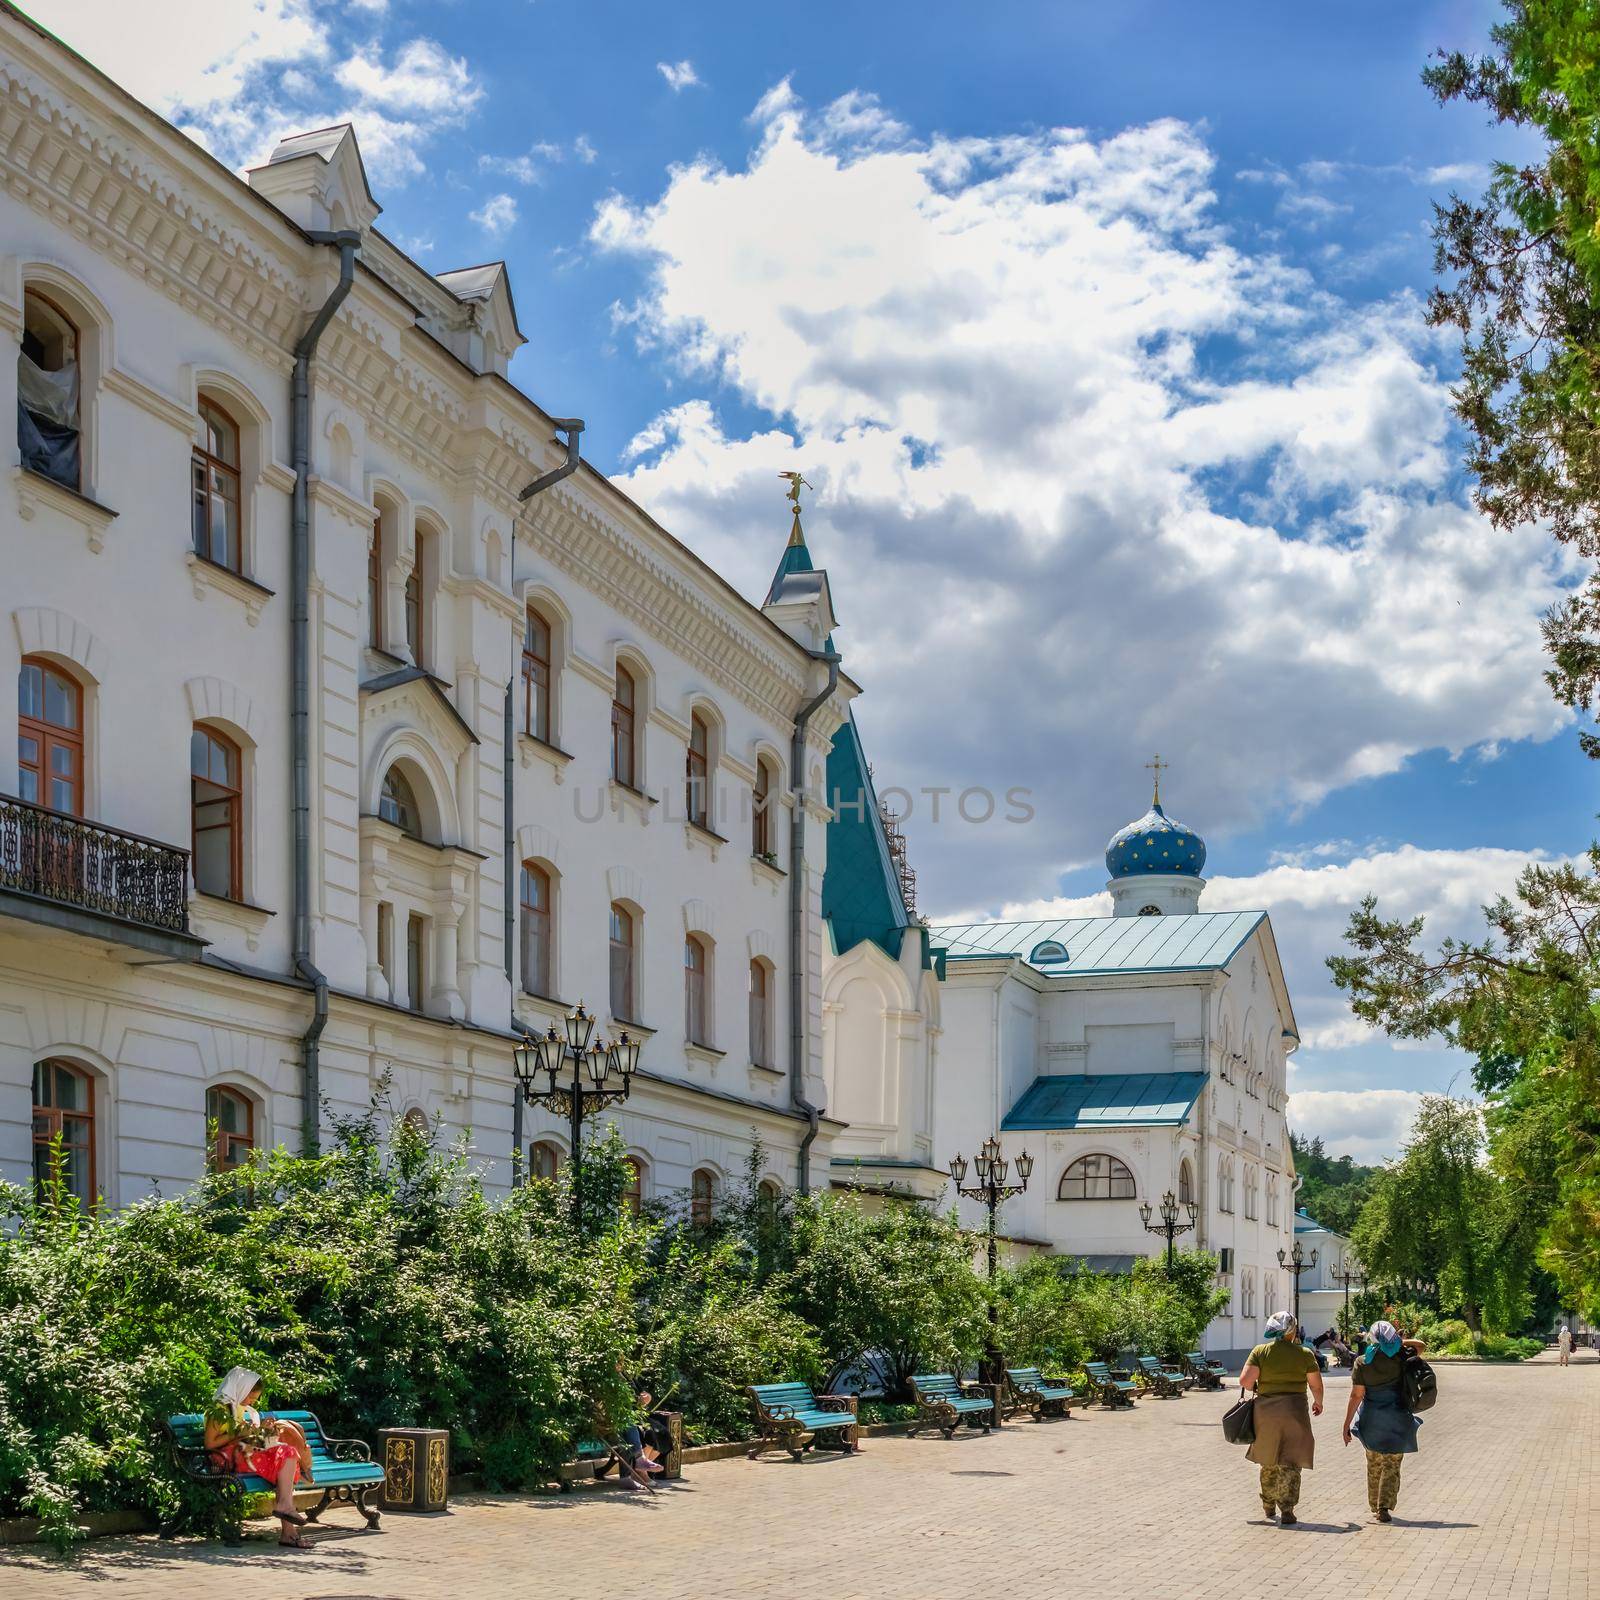 Svyatogorsk Lavra in Ukraine by Multipedia